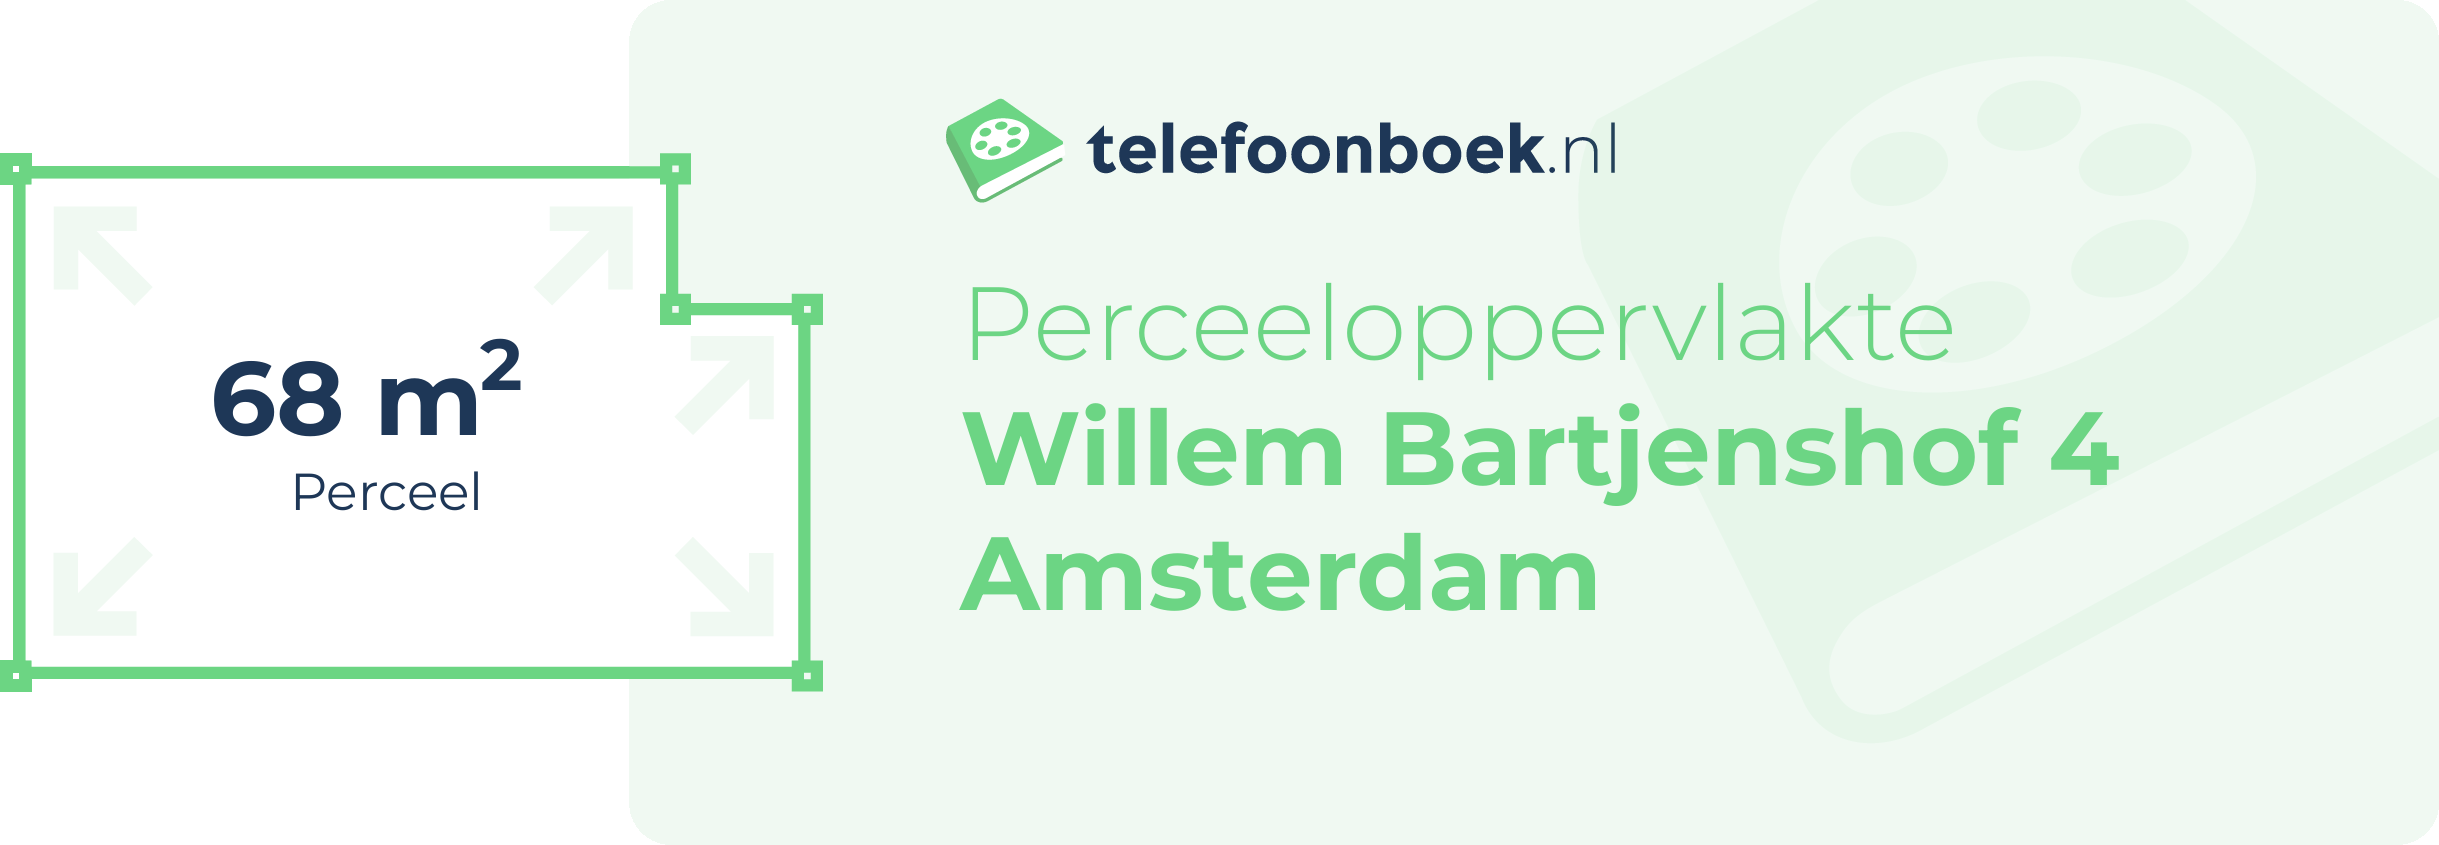 Perceeloppervlakte Willem Bartjenshof 4 Amsterdam